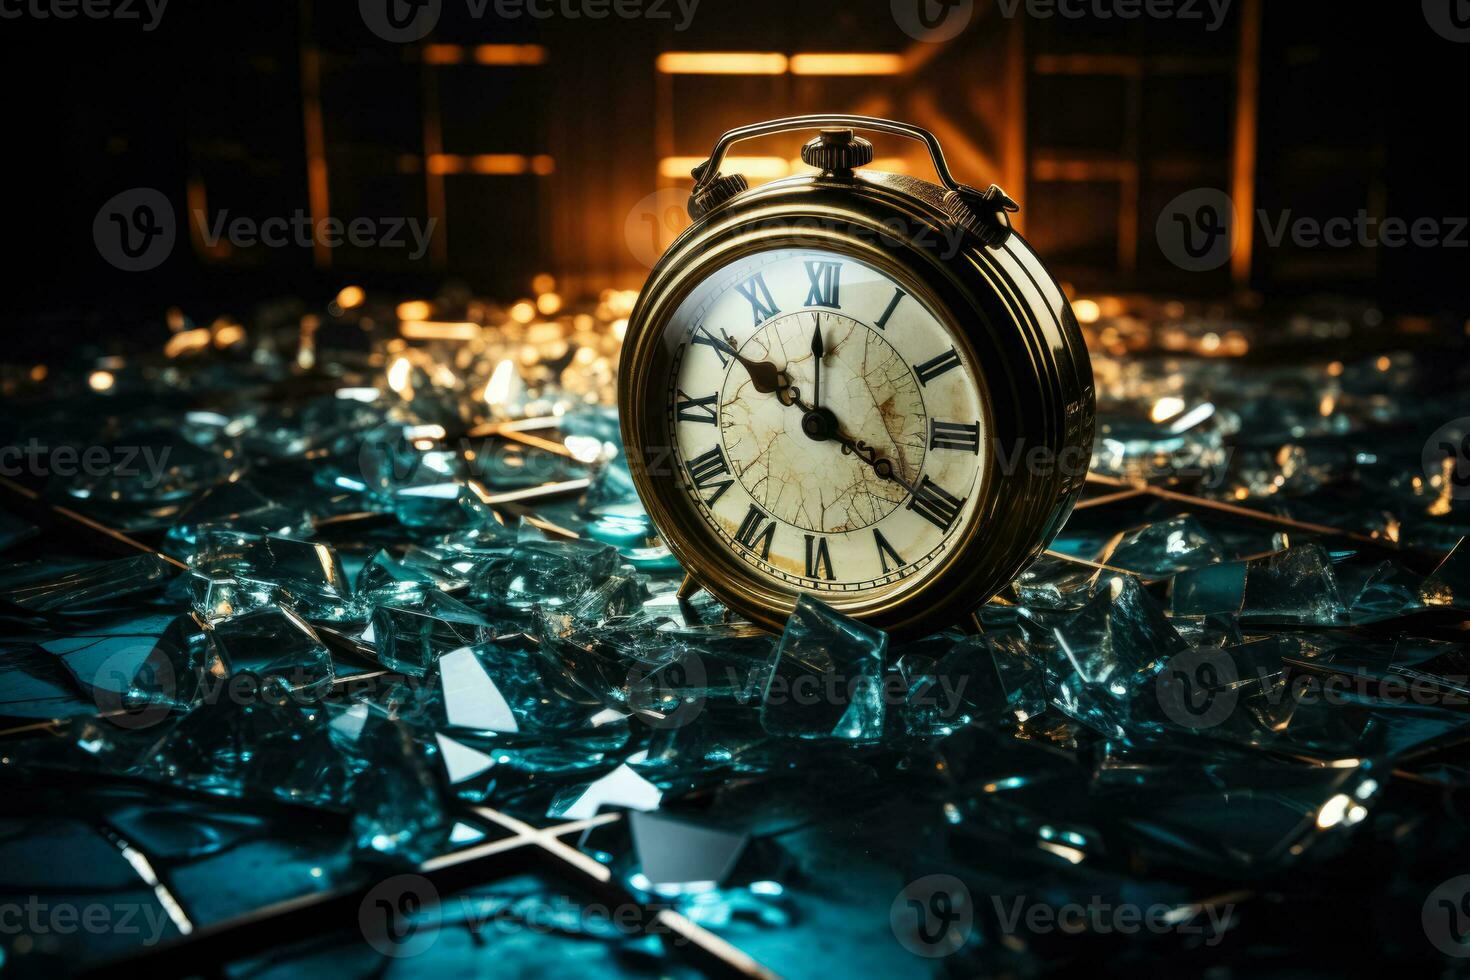 kedjad klocka och krossade glasögon symboliserar störande sovande mönster foto